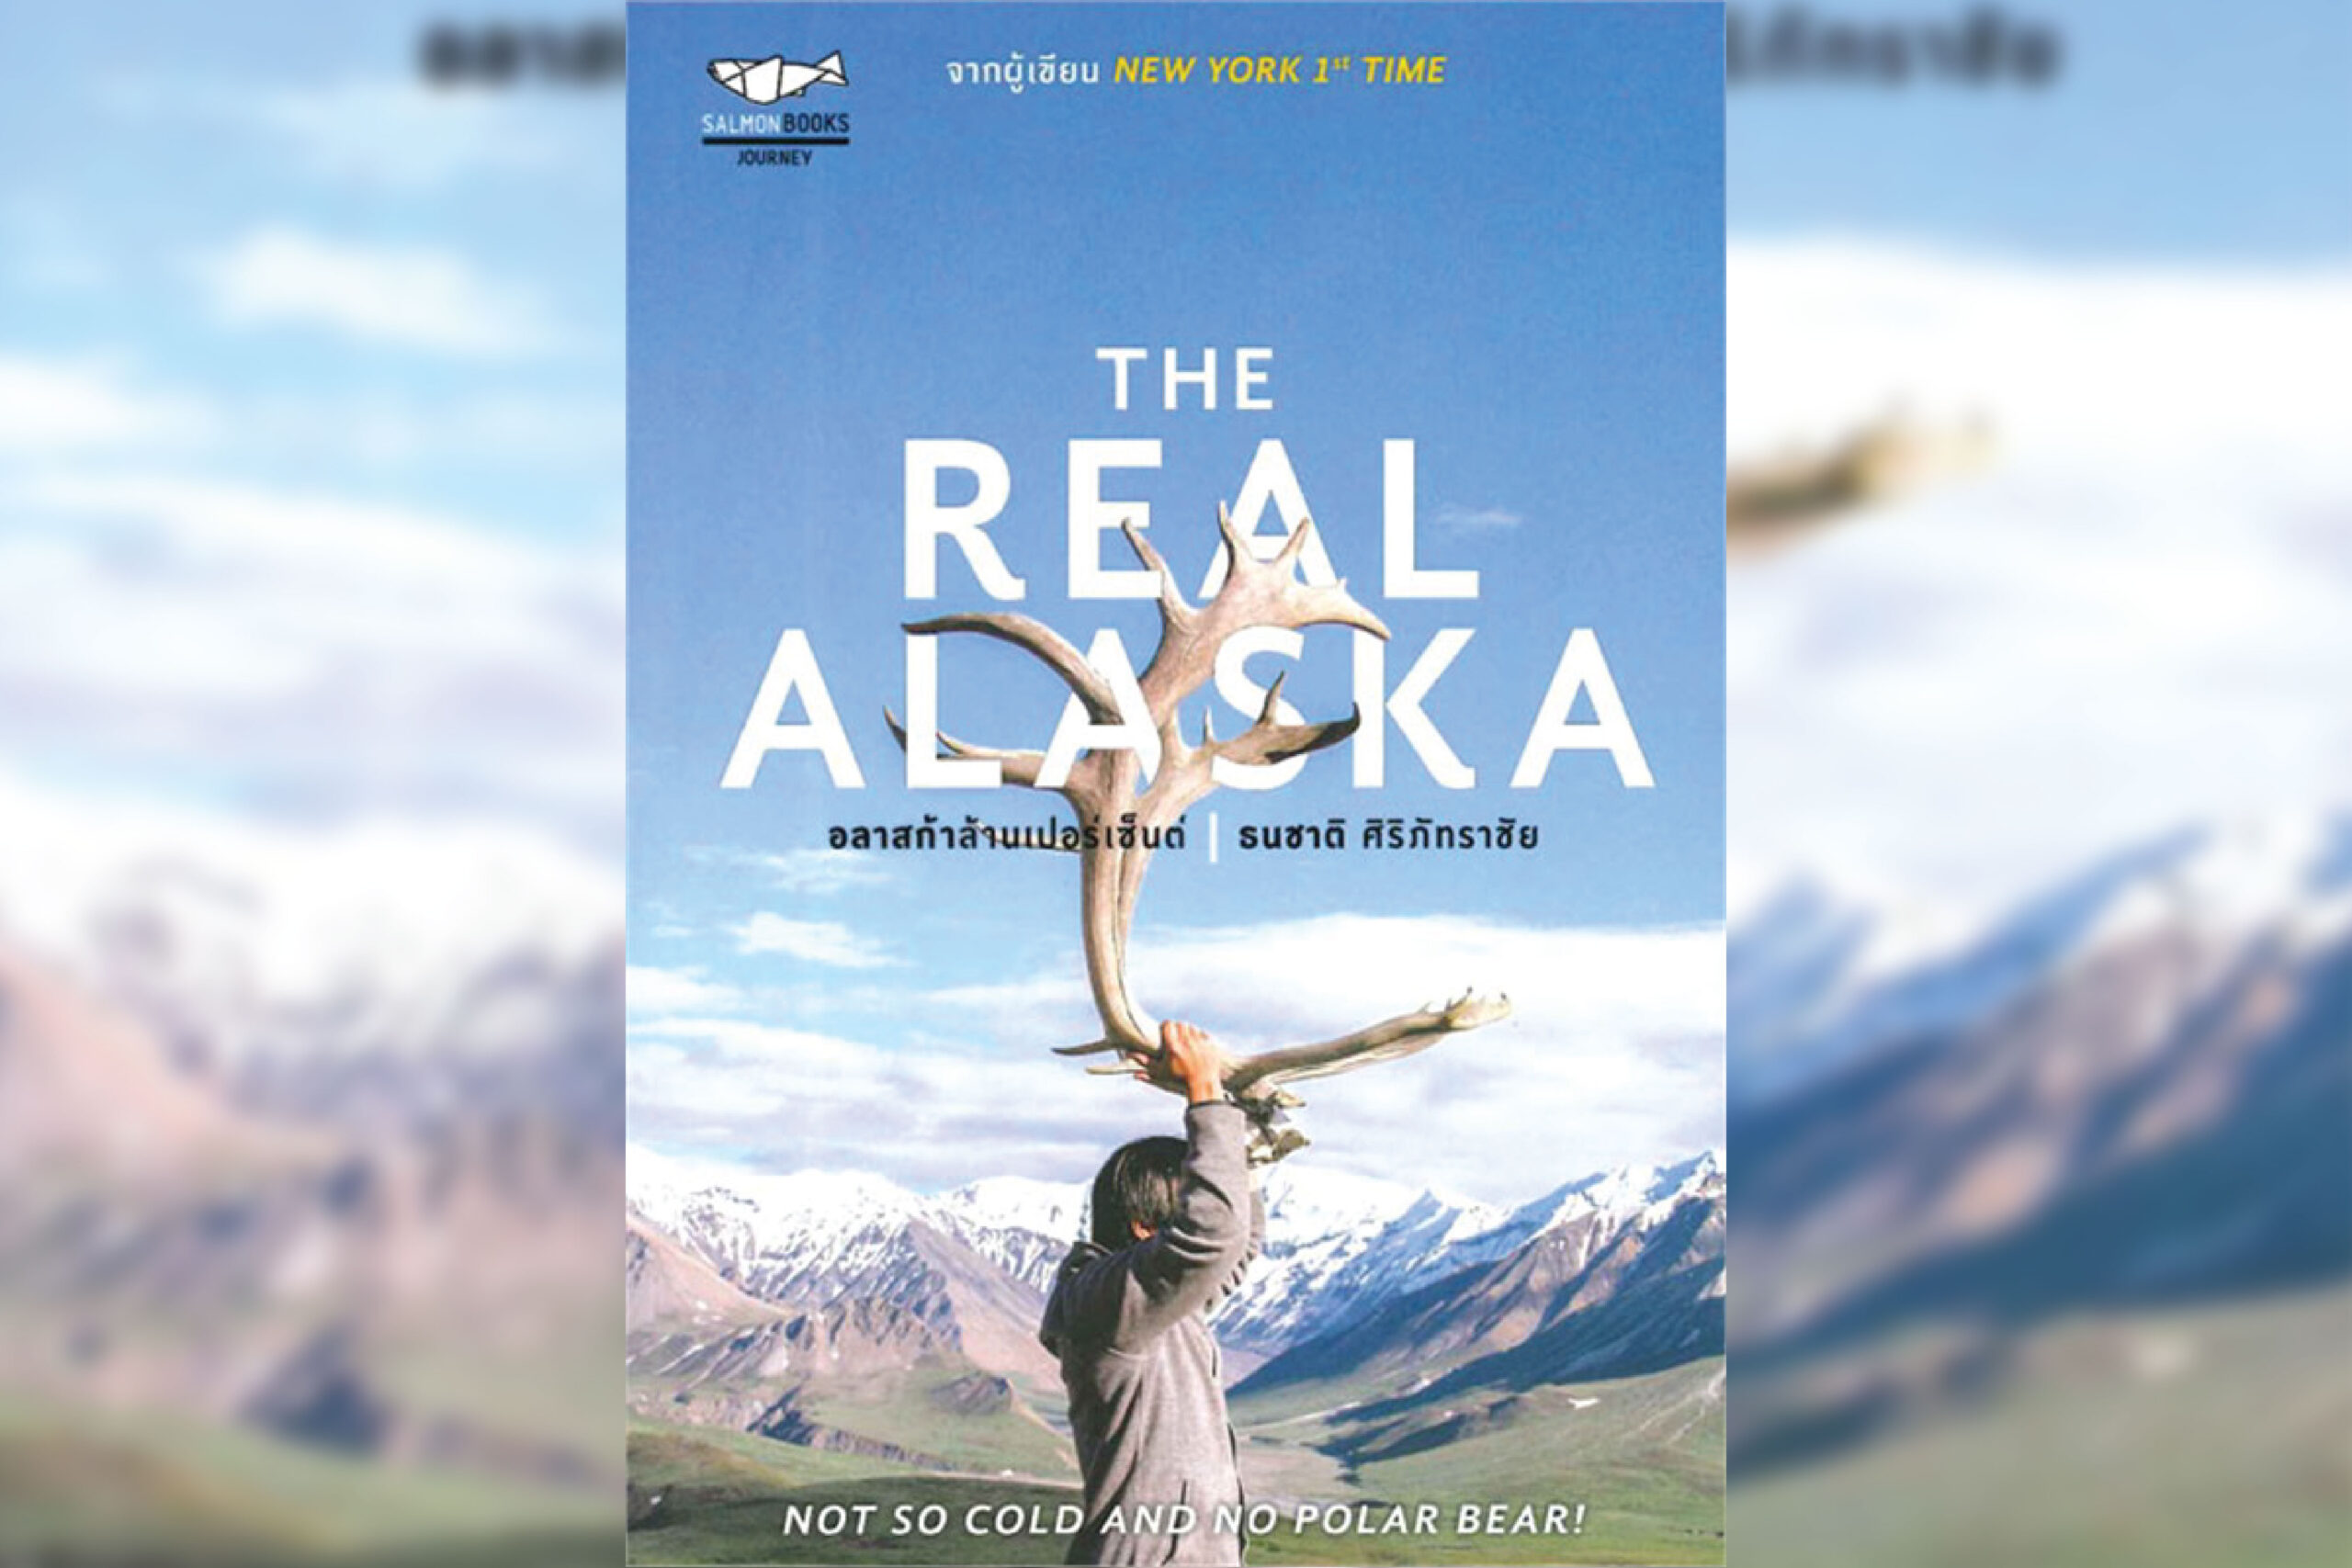 10. The Real Alaska